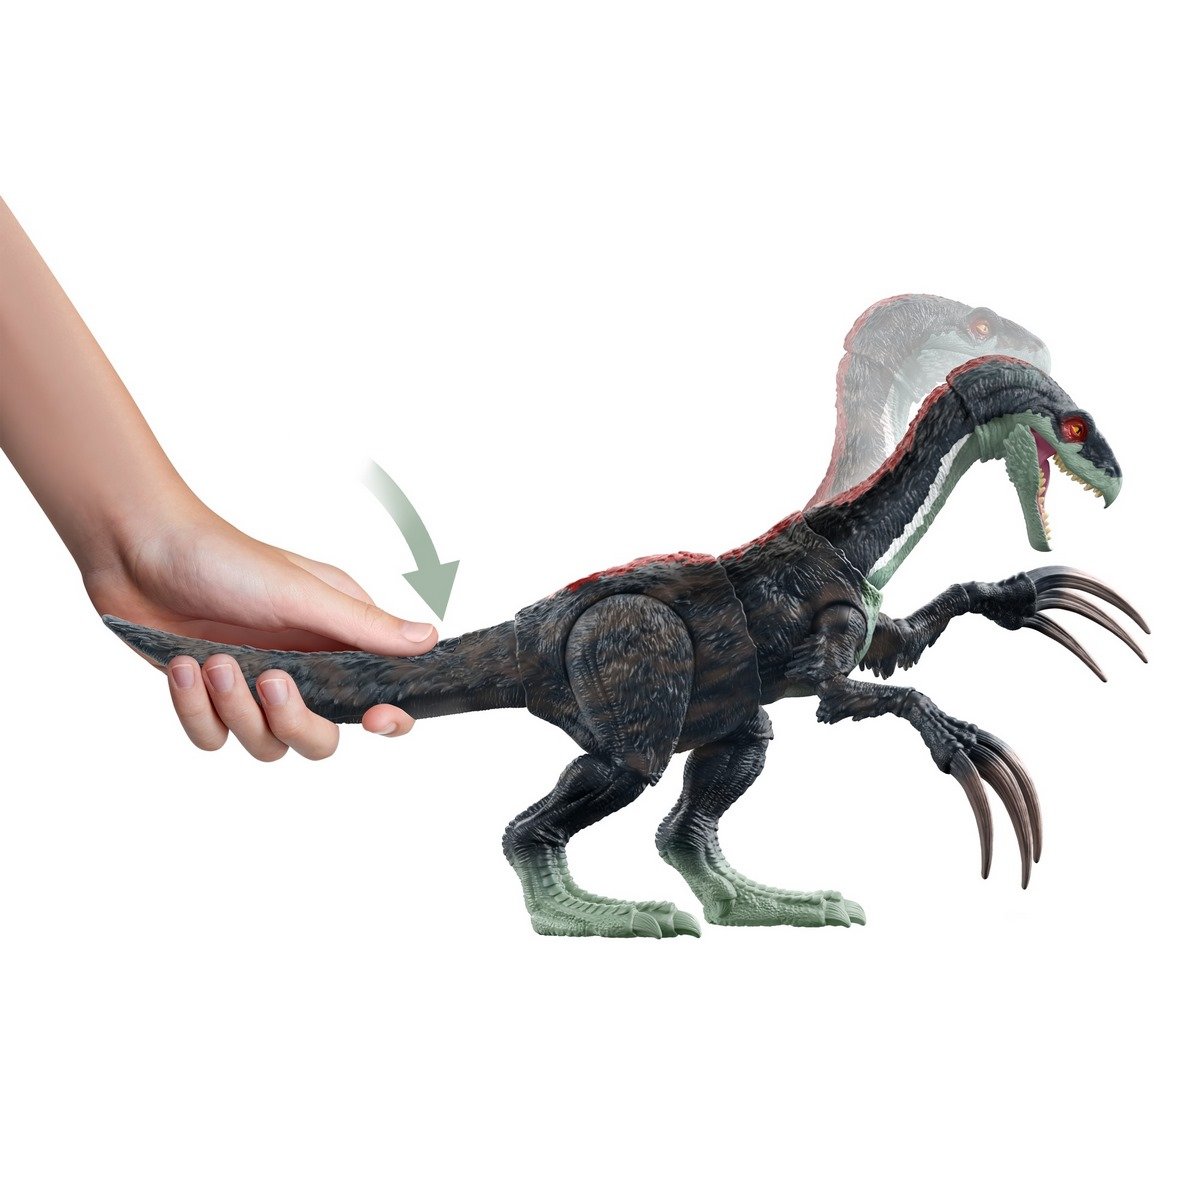 Jouet Dinosaure - Figurines de Collection